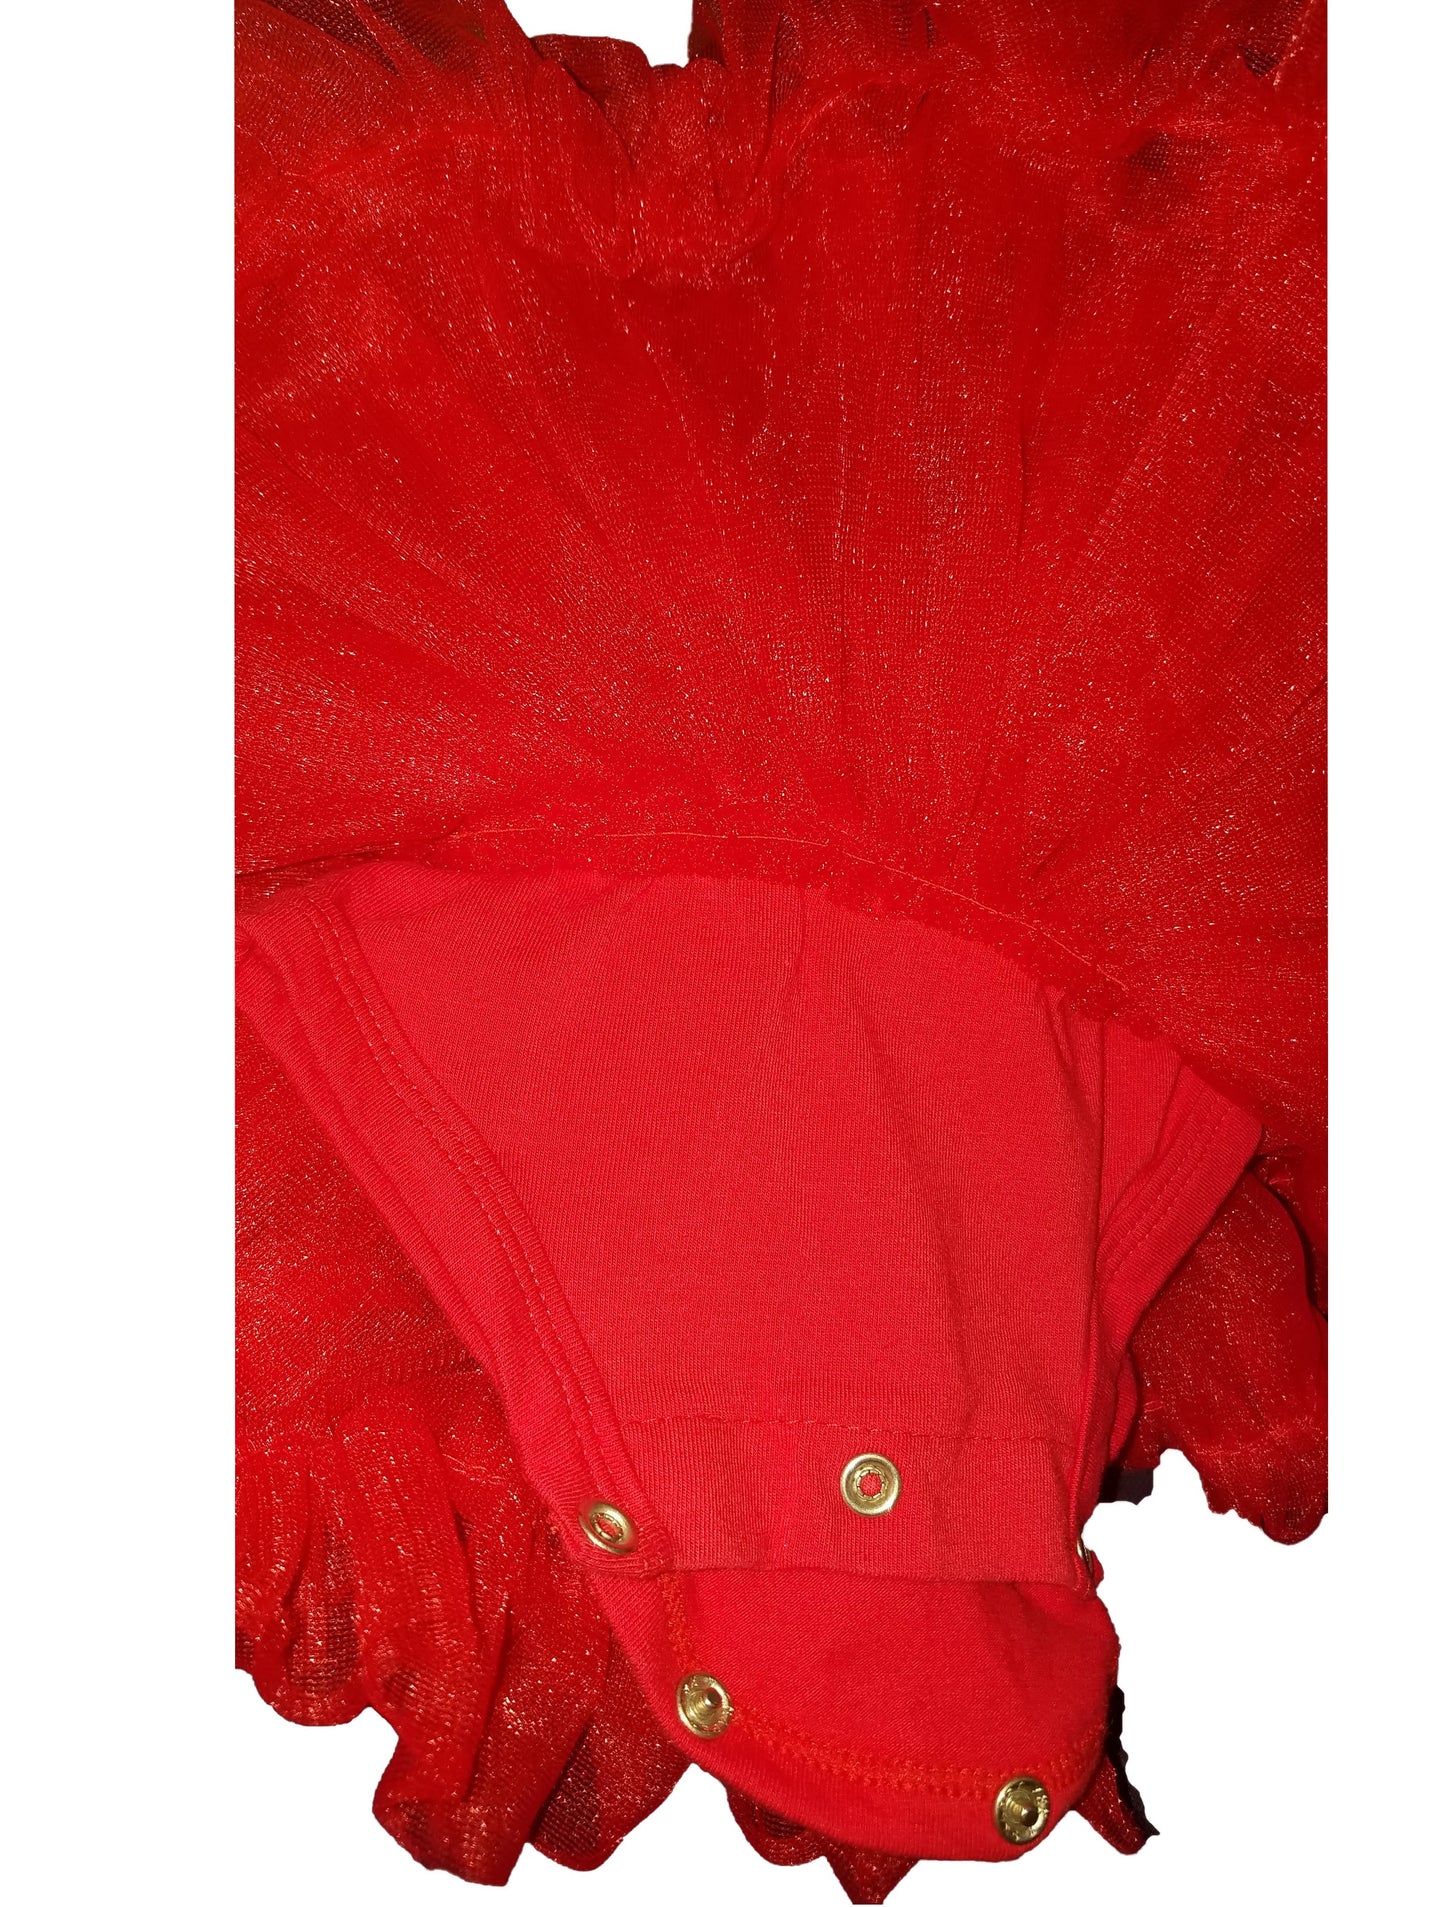 Baby Girl Red Ruffle Dress